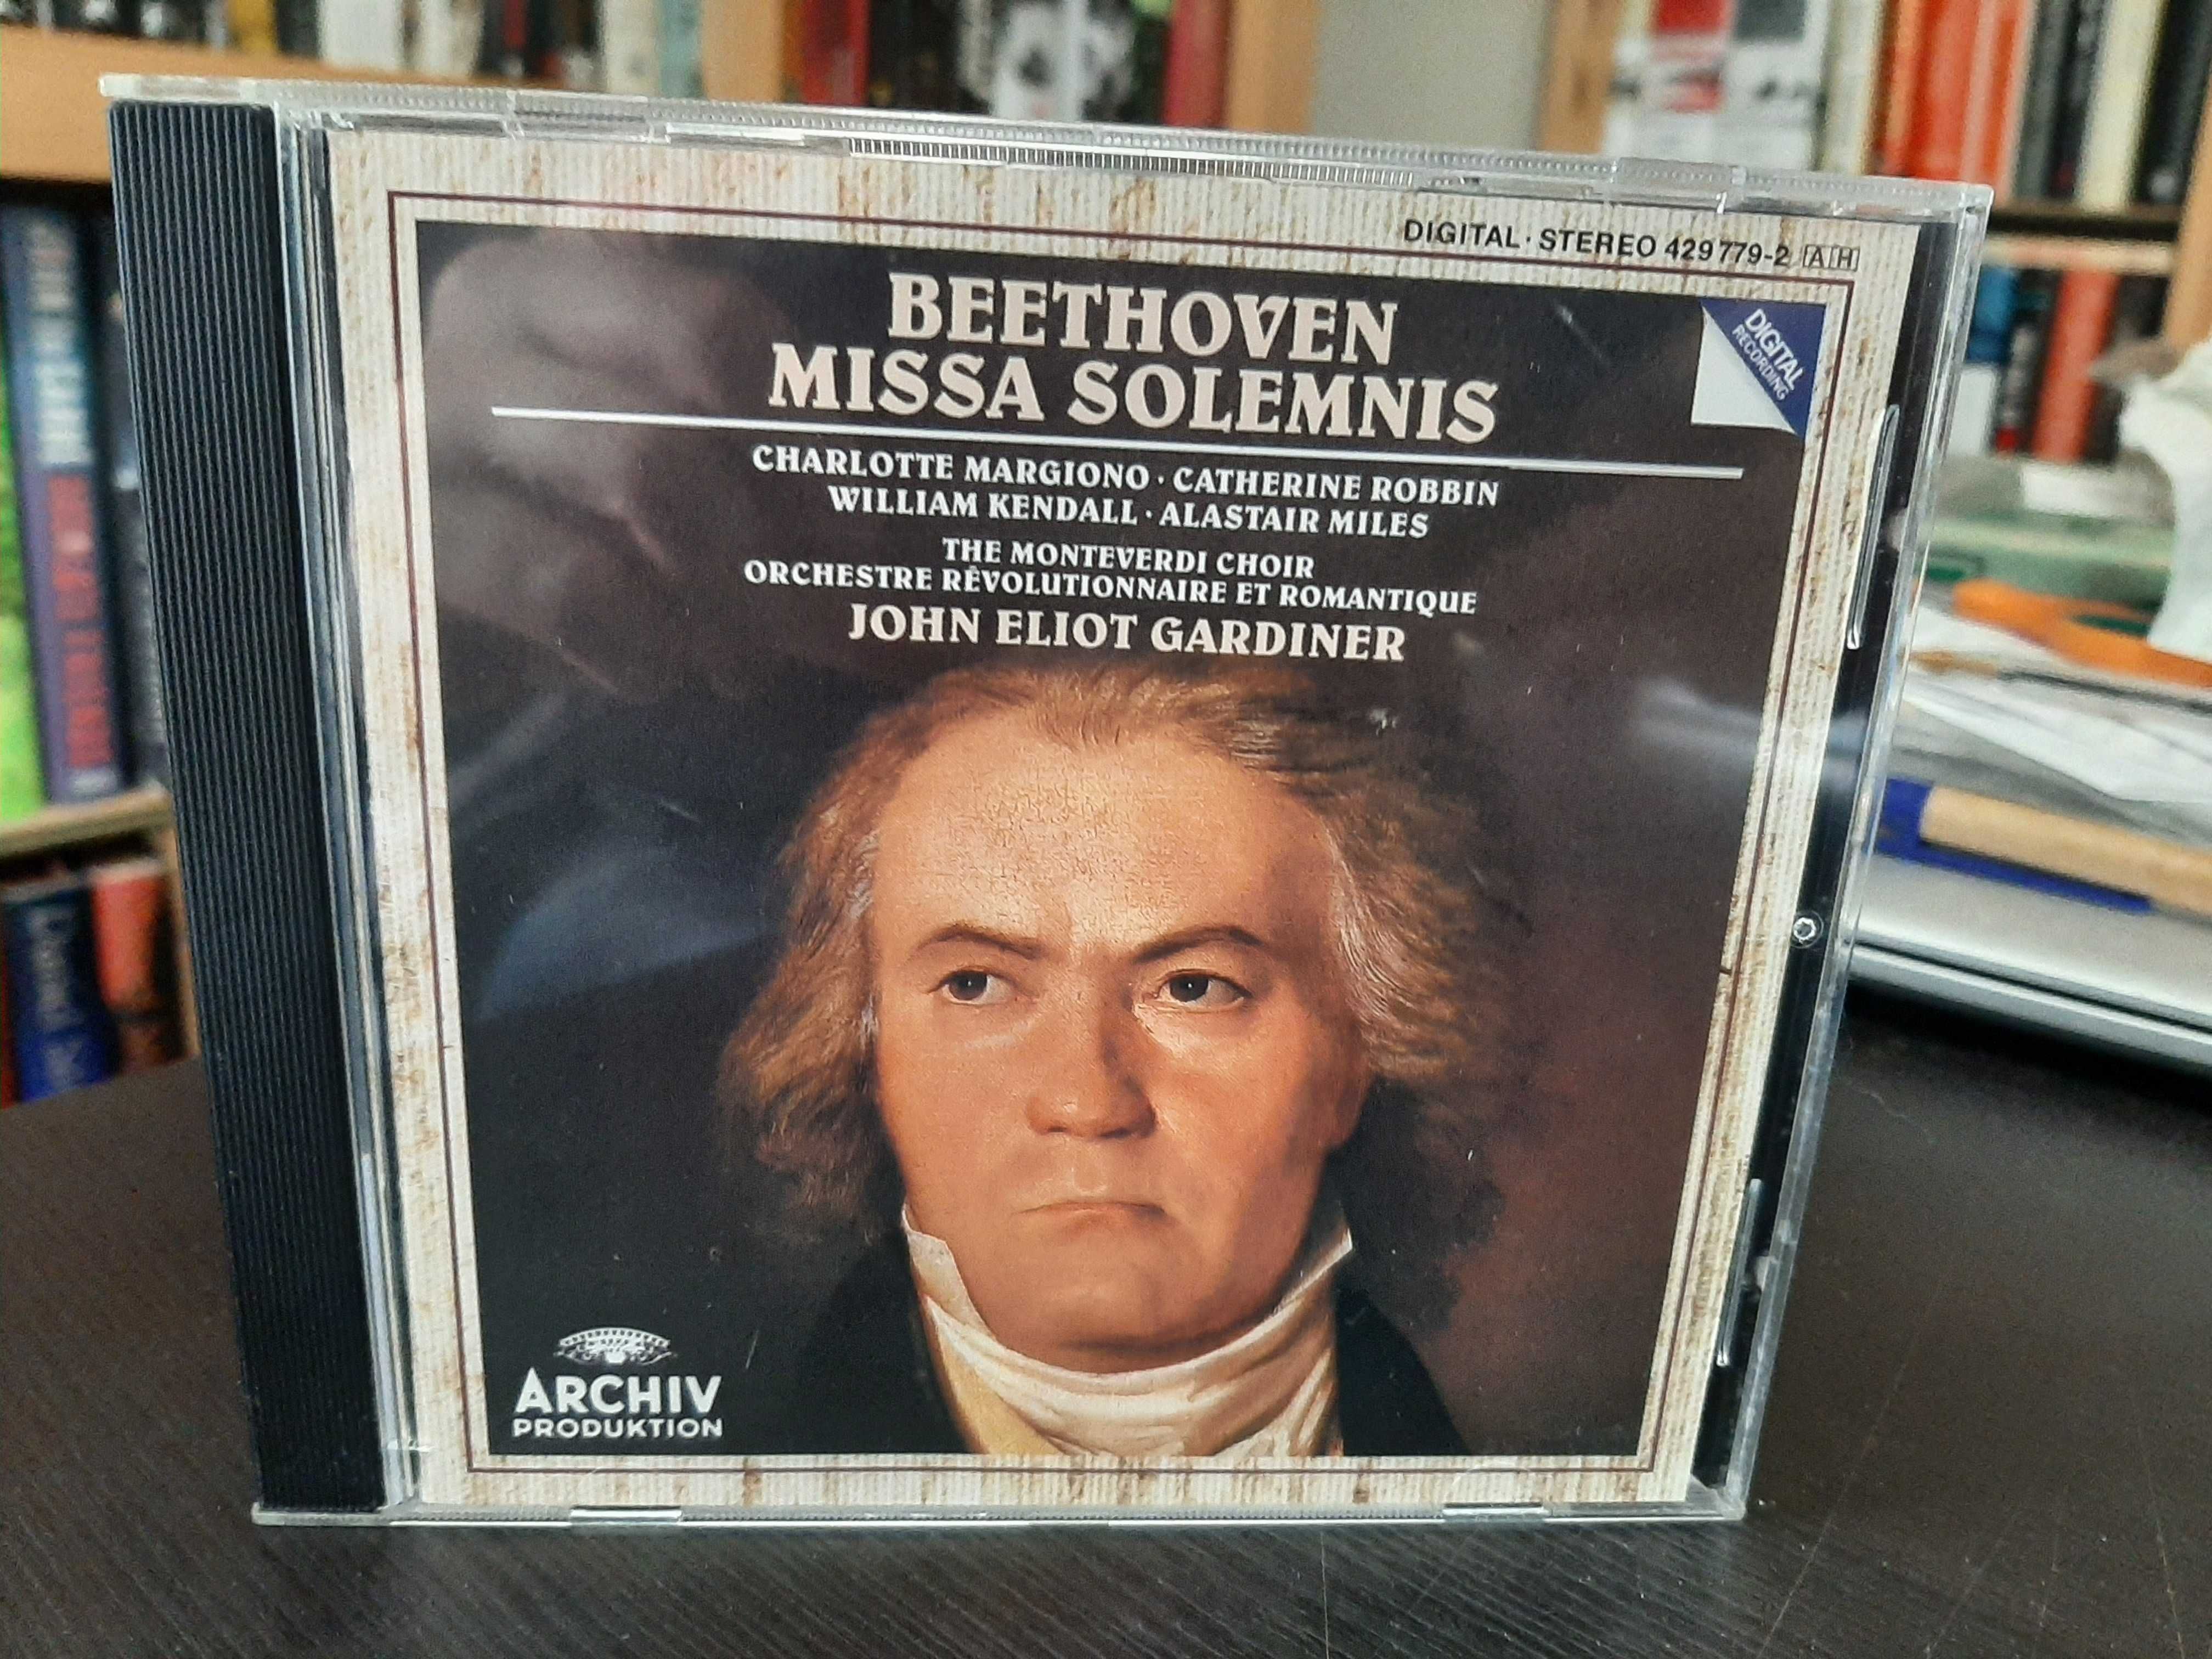 Beethoven - Missa Solemnis - John Eliot Gardiner - Monteverdi Choir